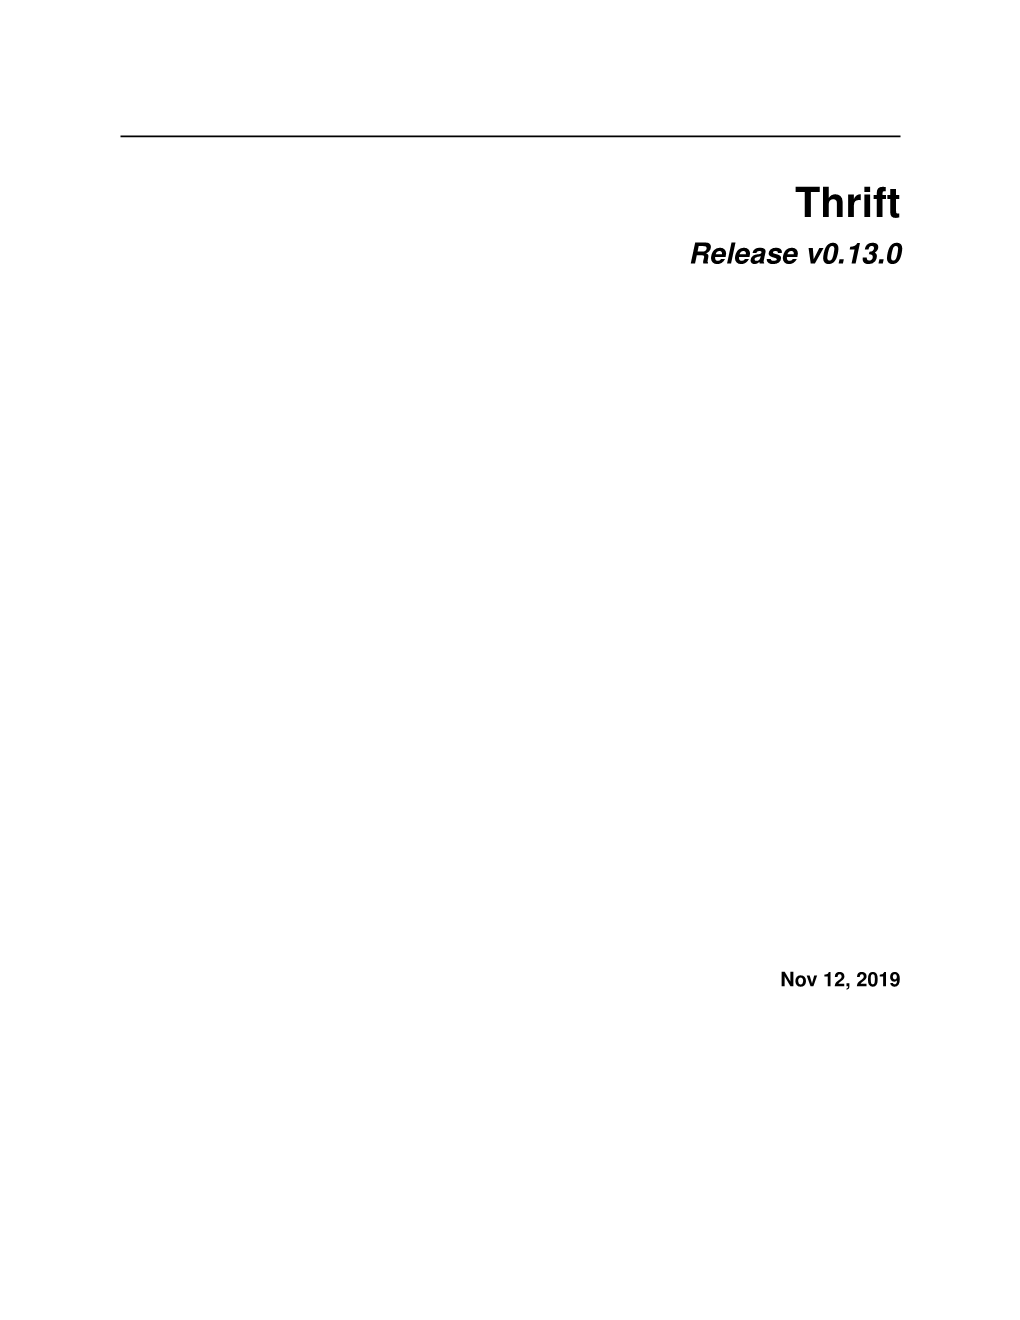 Thrift Release V0.13.0